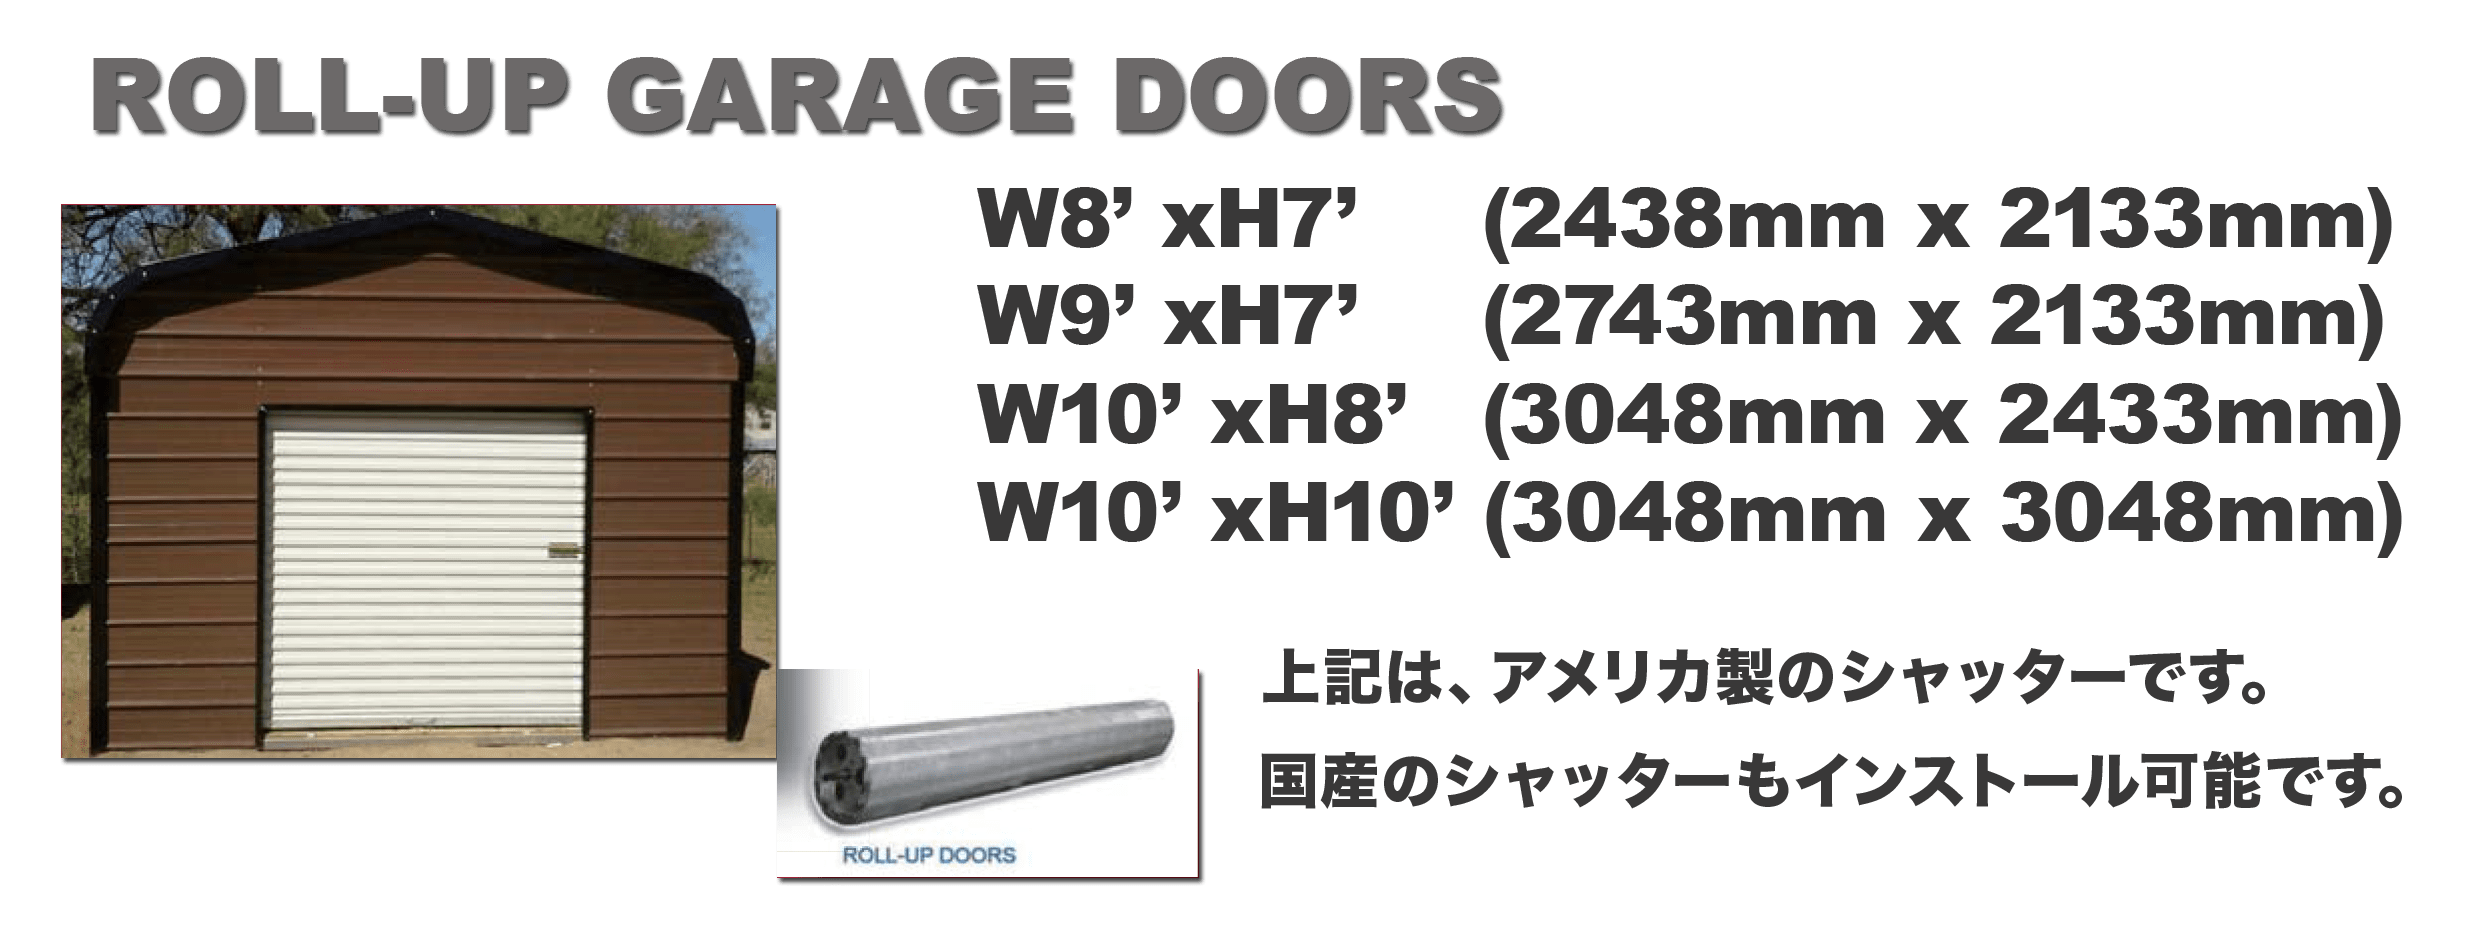 ROLL-UP GARAGE DOORS